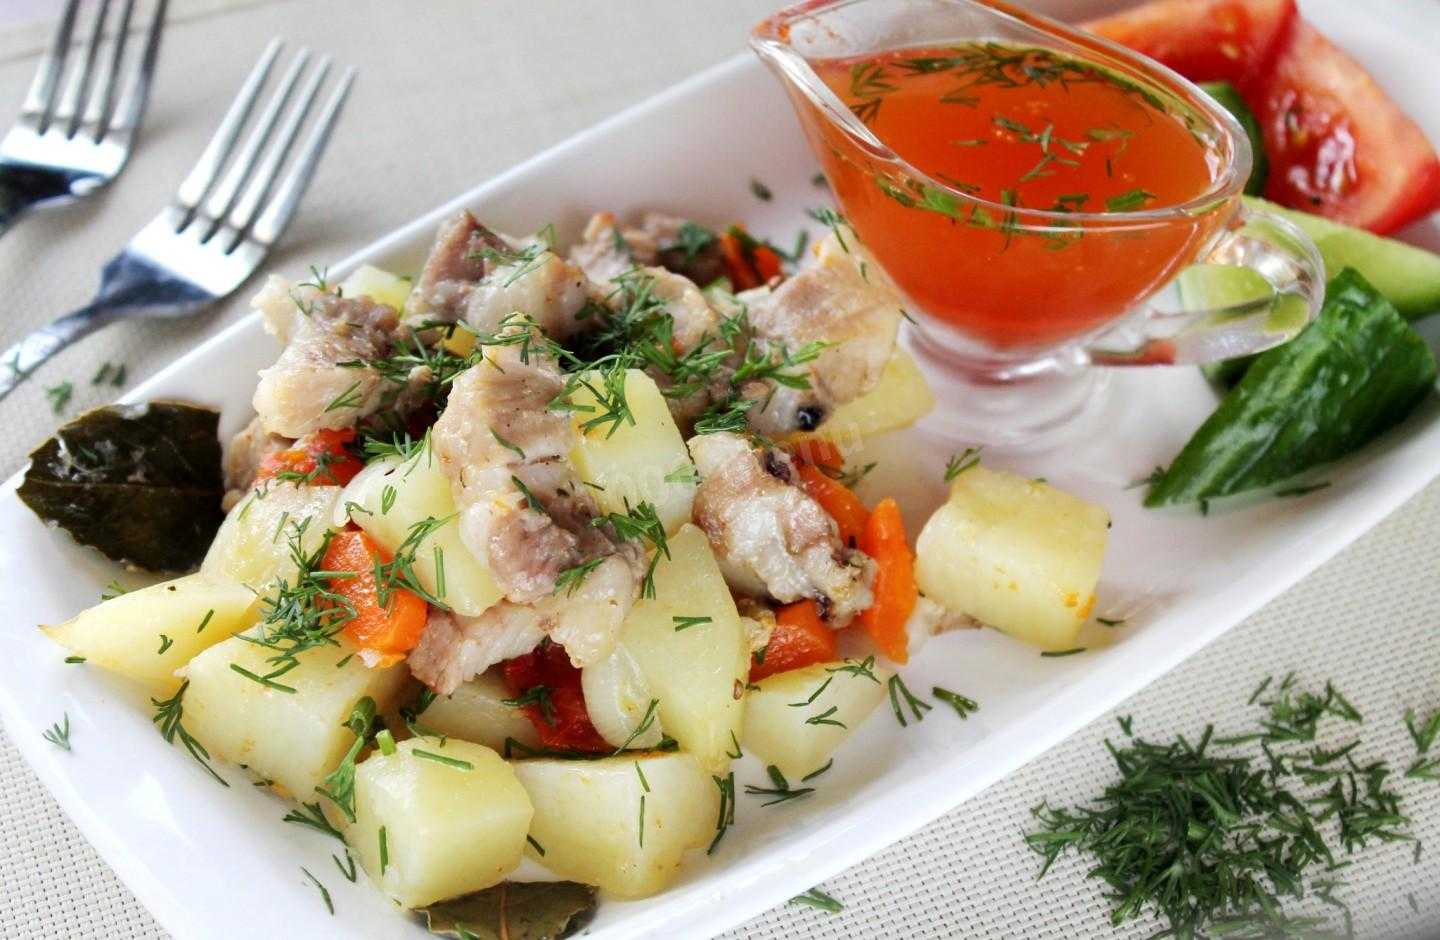 Hецепт обалденного турецкого картофельного салата, простого и быстрого в приготовлении.